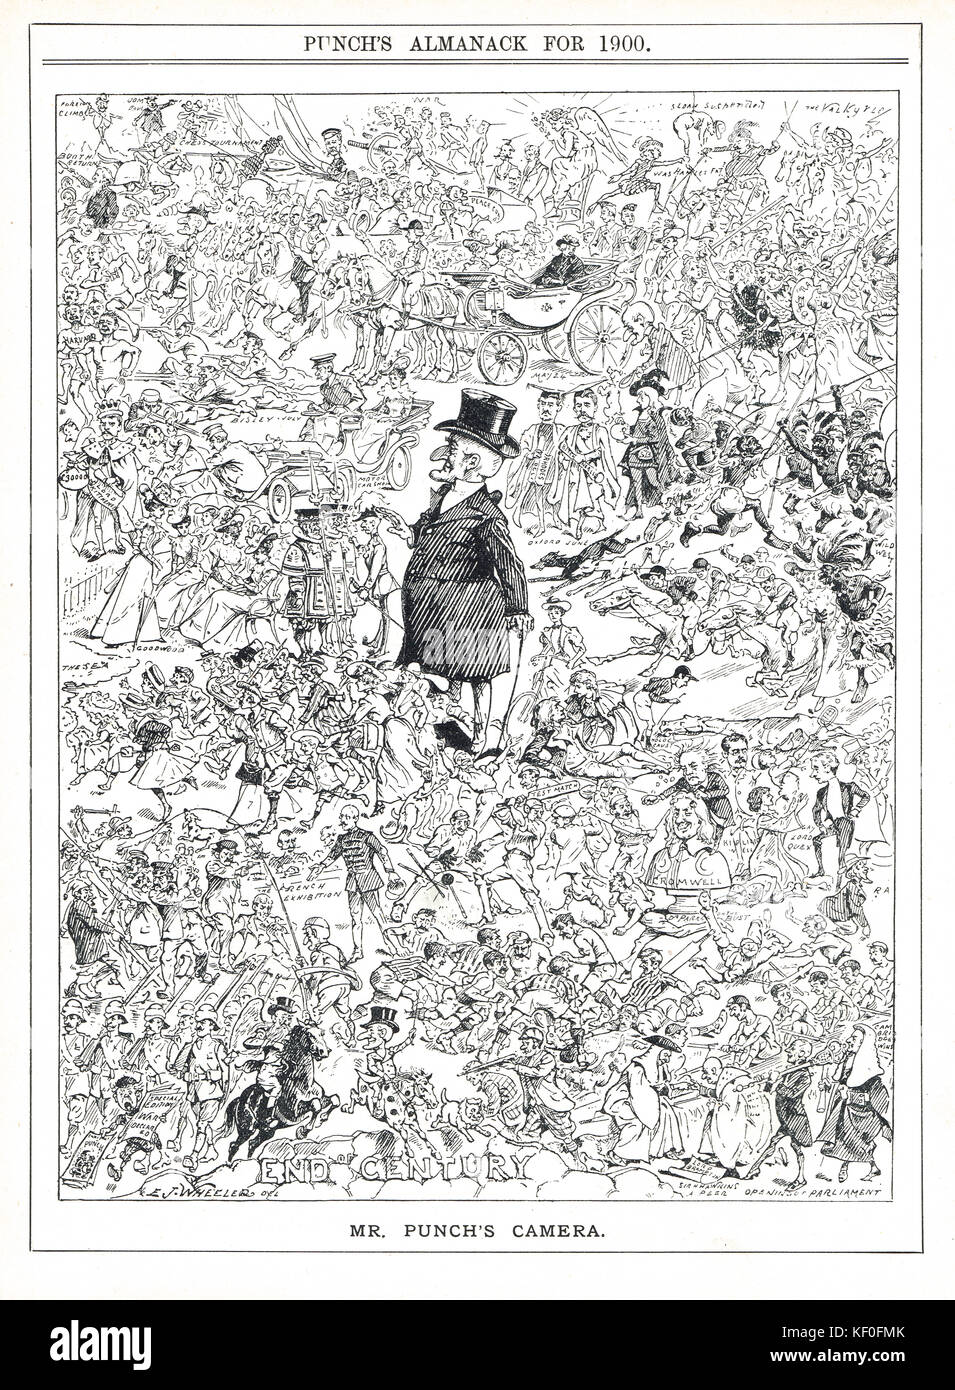 Das Ende des Jahrhunderts, Punch-Cartoon von 1900. Cartoon von E. J. Wheeler. Darstellung sportlicher, politischer und gesellschaftlicher Ereignisse am Ende des Jahrhunderts. Stockfoto